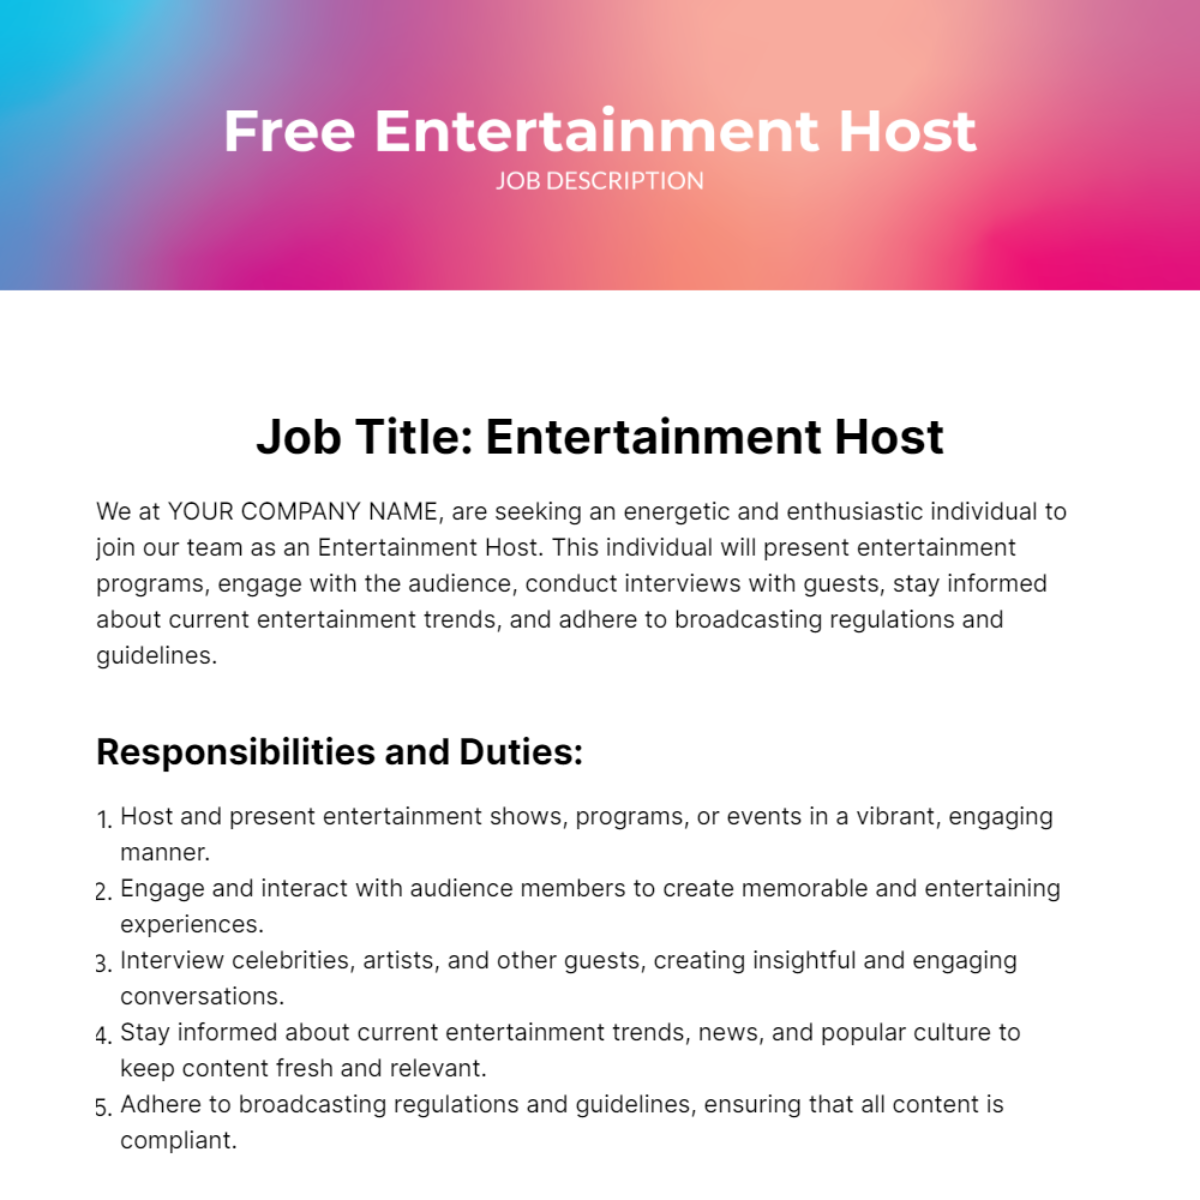 Free Entertainment Host Job Description Template